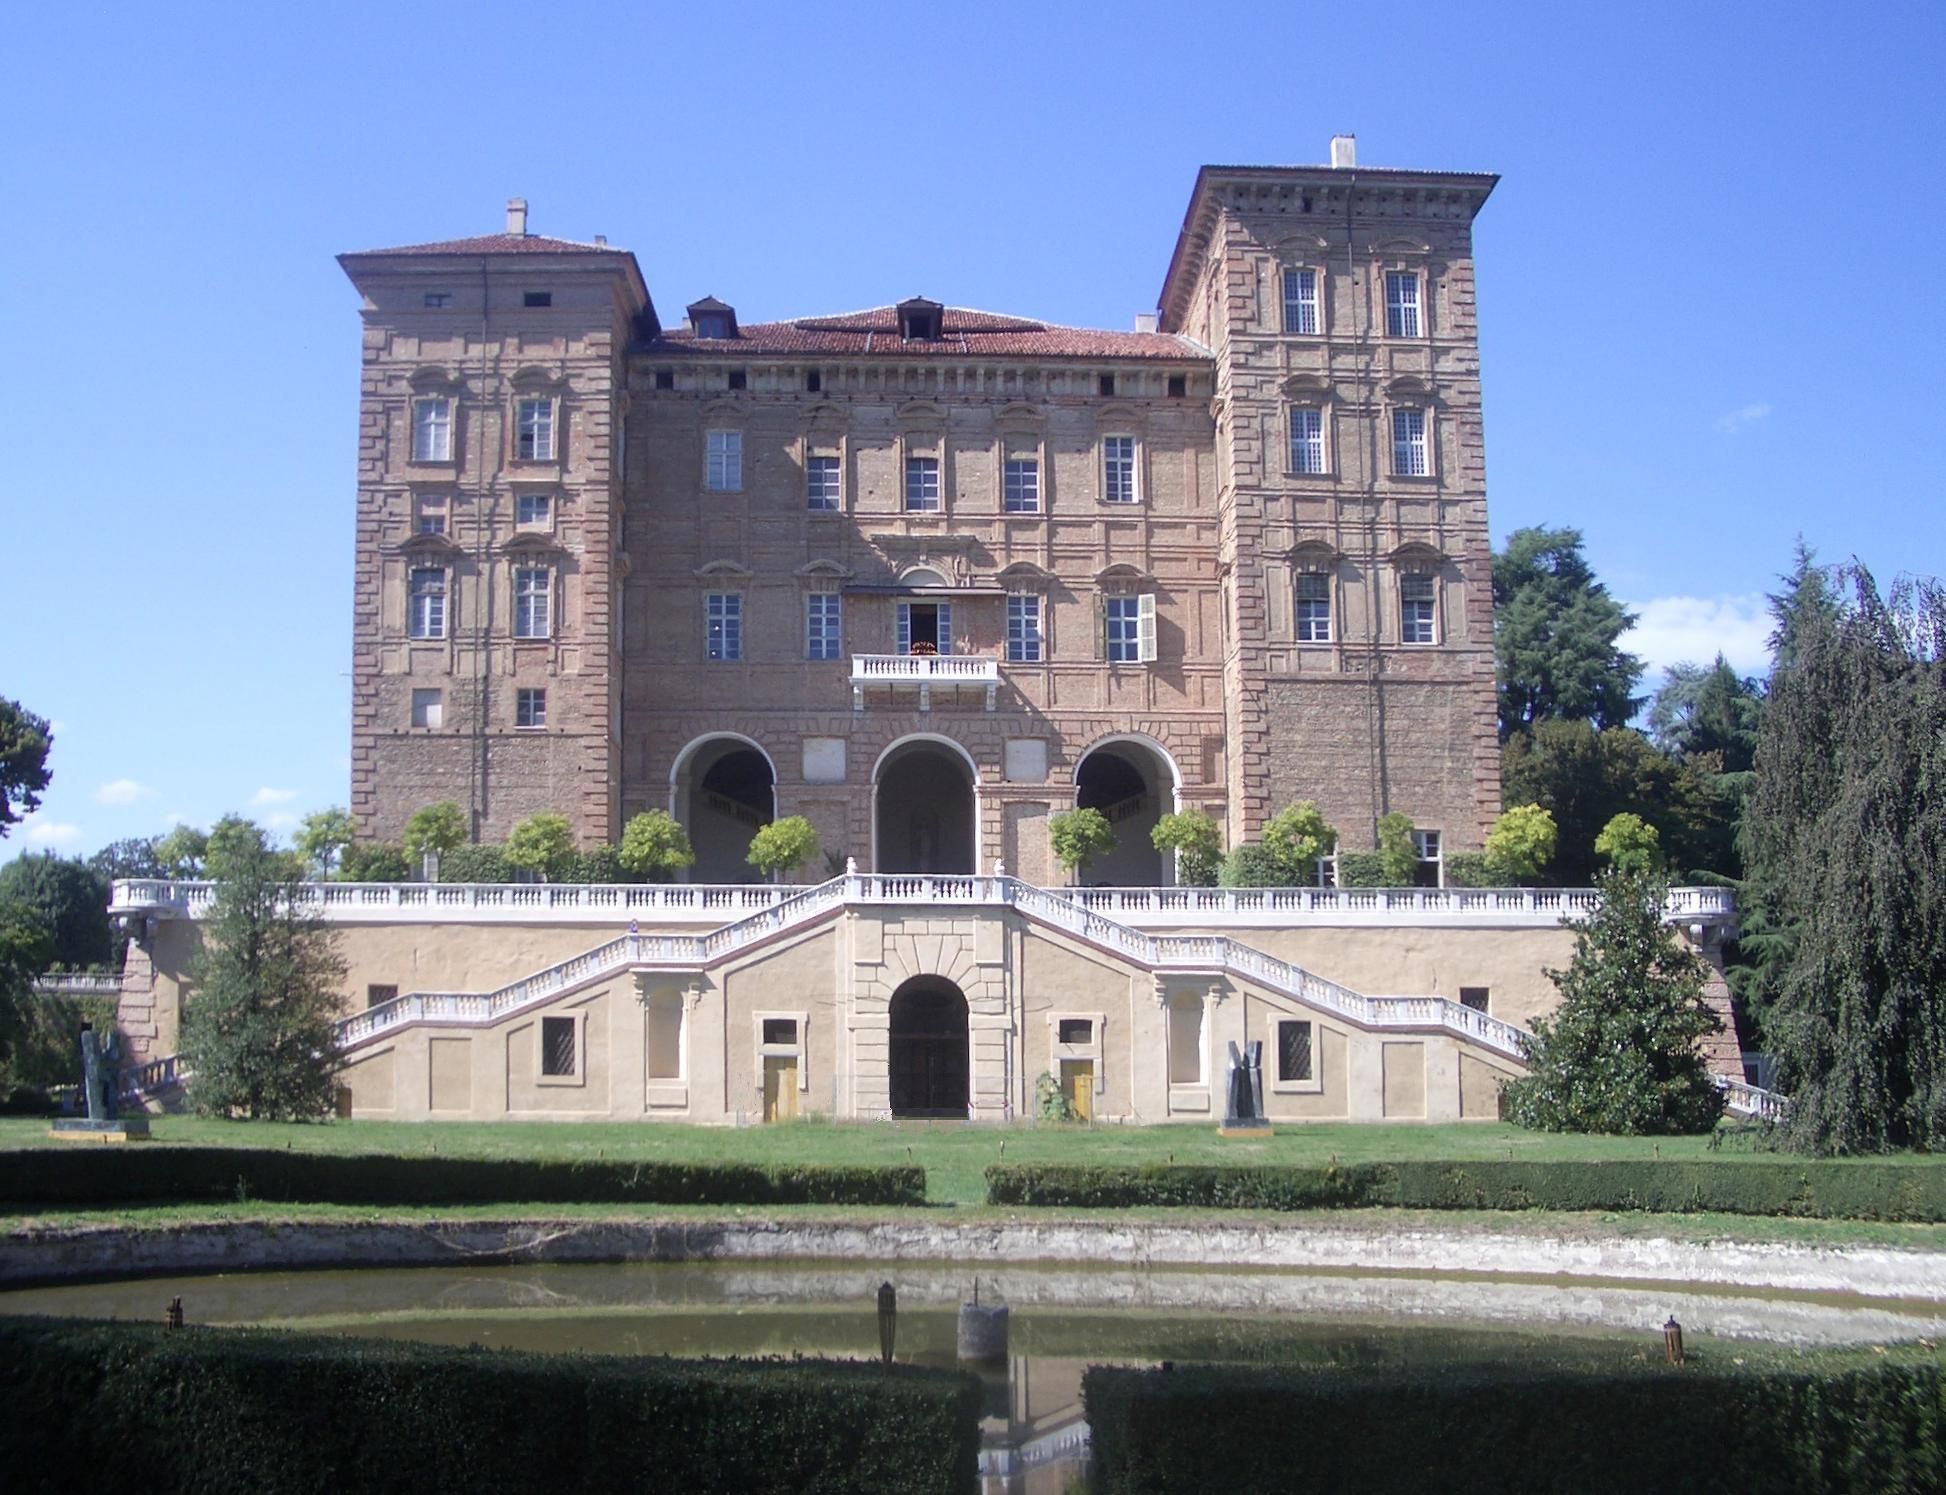 Castle of Agliè, Agliè (Turin), Piedmont, Italy